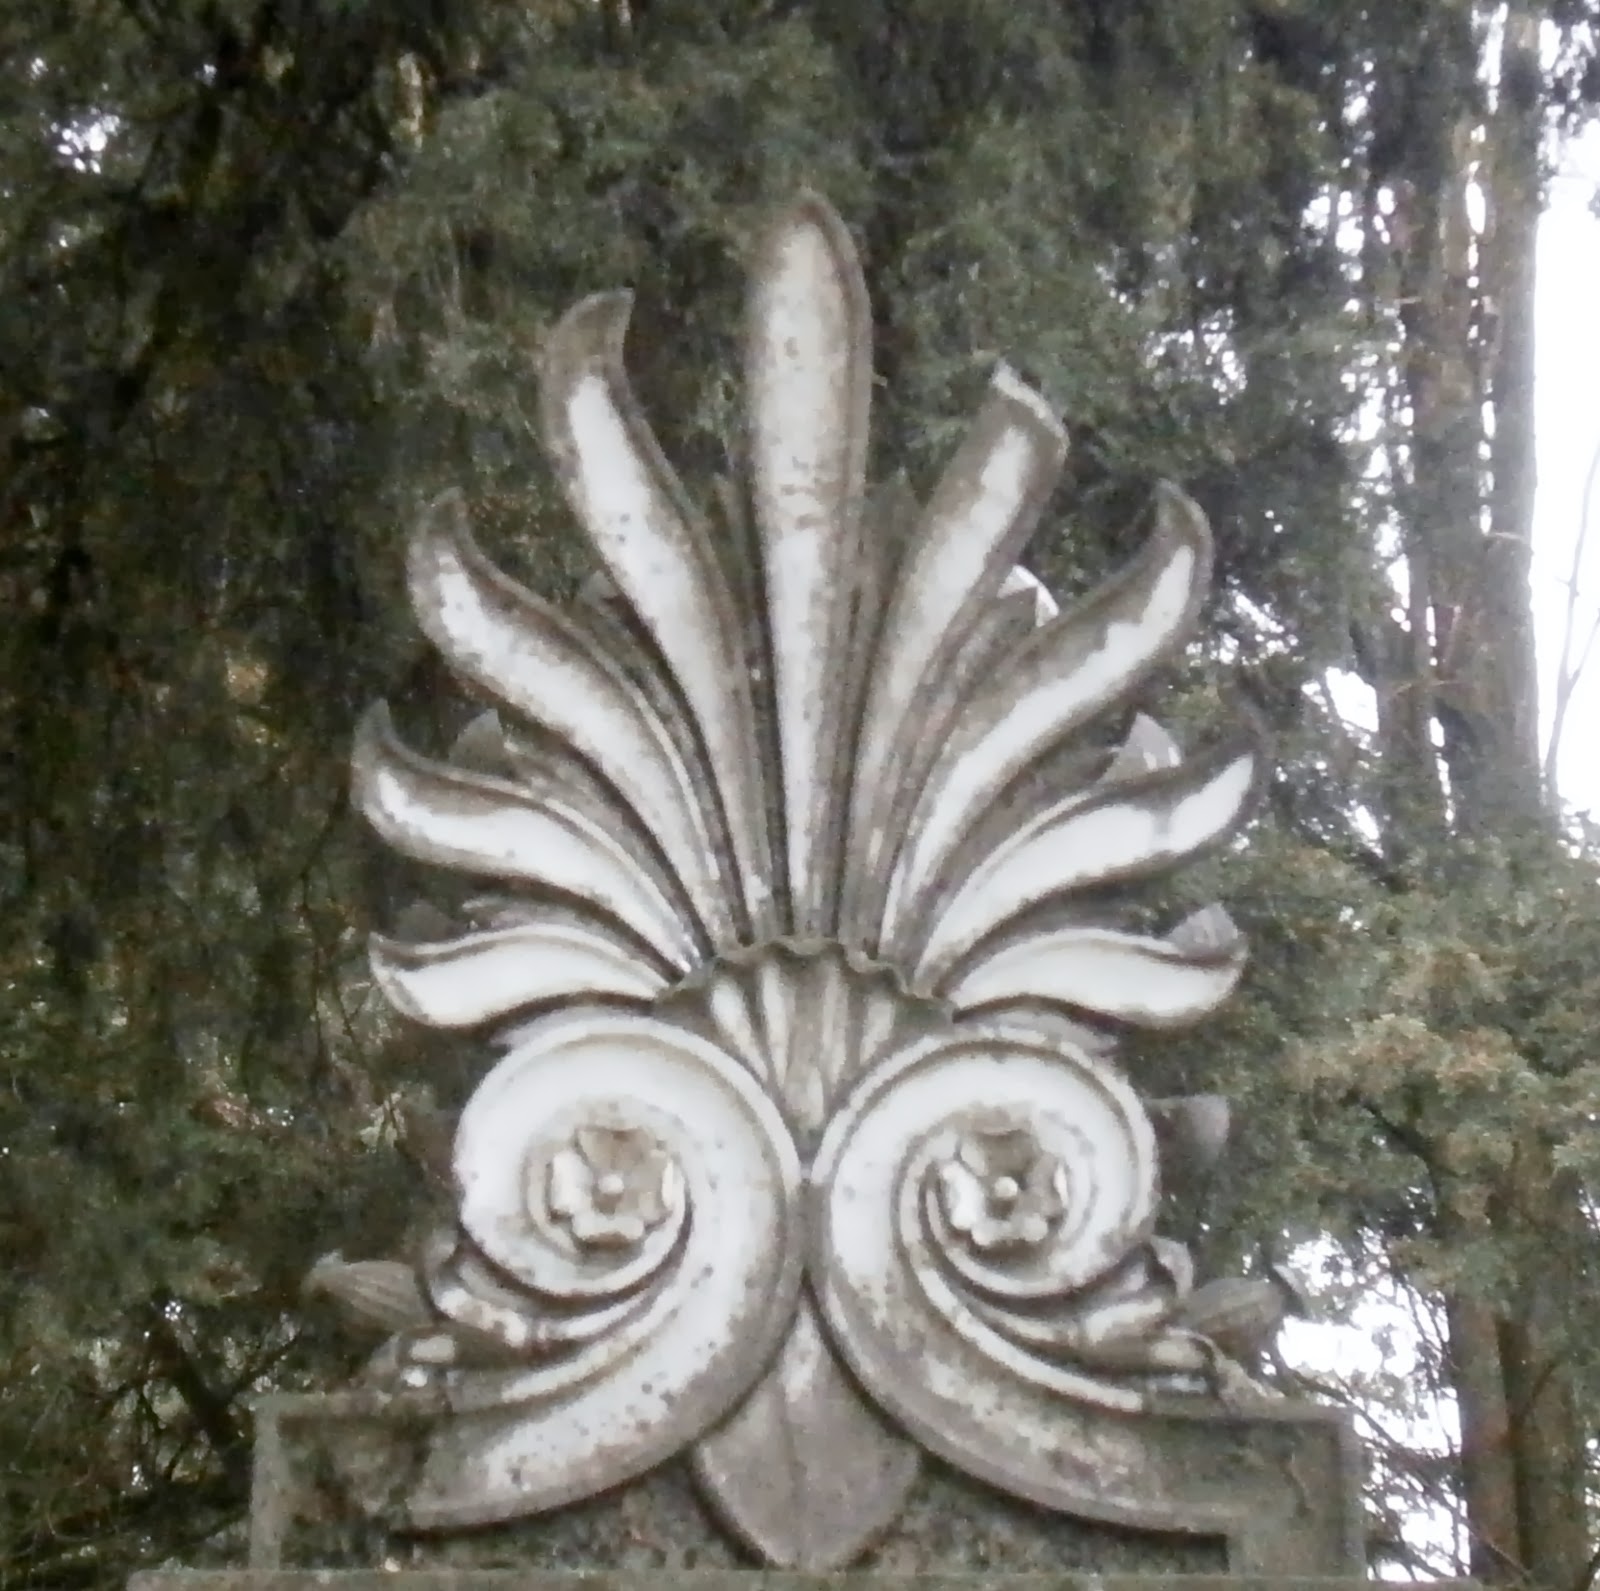 το μνημείο του Αλκιβιάδη Καστρινού στο Α΄ Δημοτικό Νεκροταφείο Ιωαννίνων